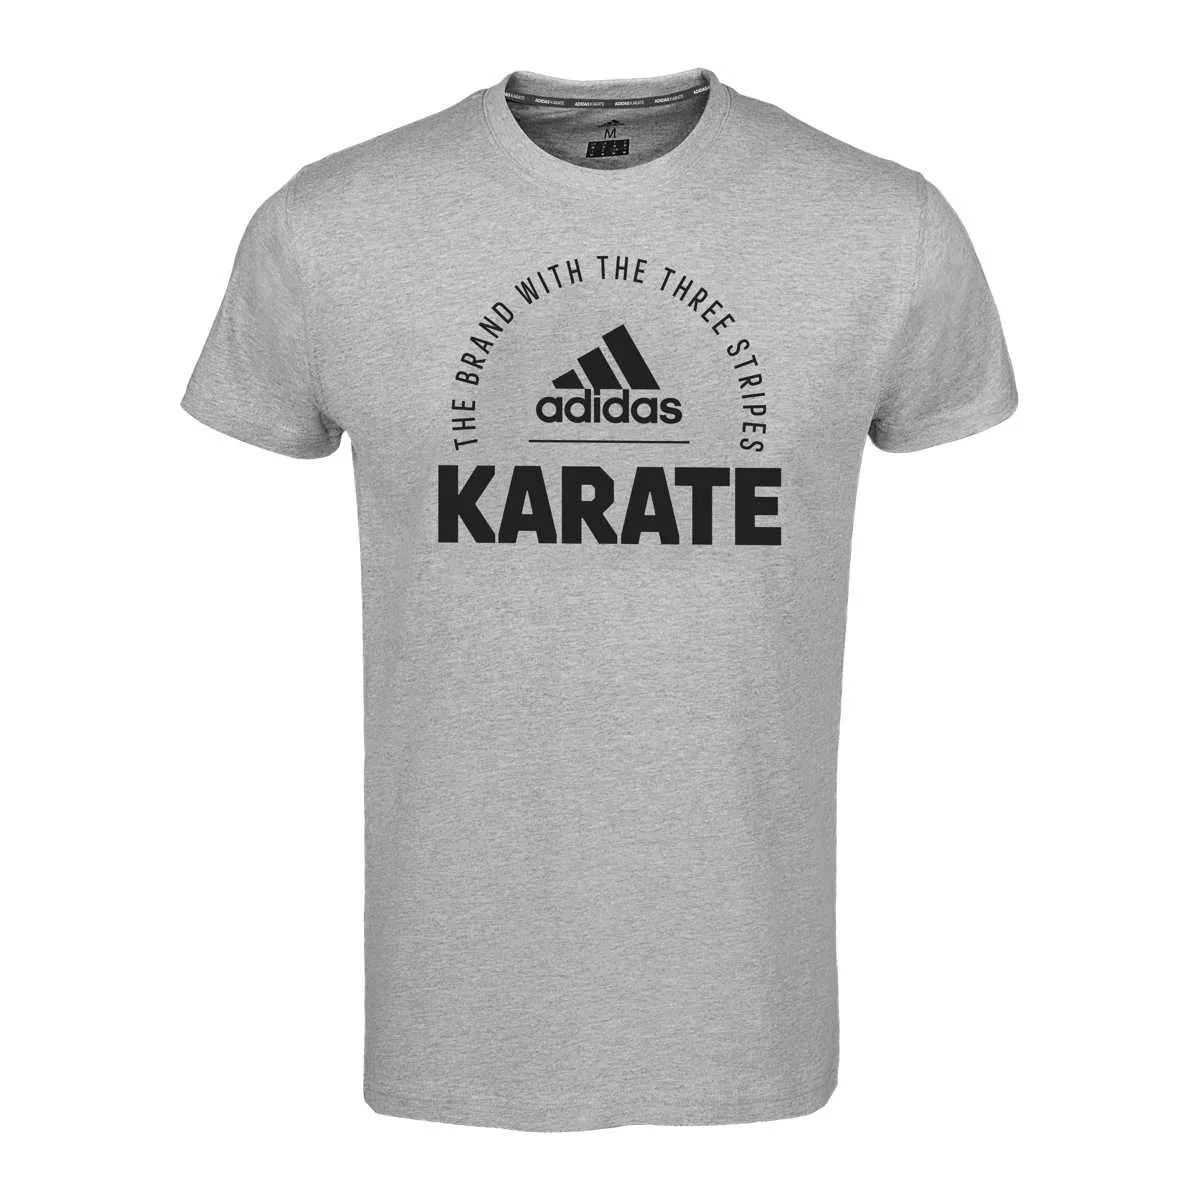 adidas T-Shirt Karate grau Community